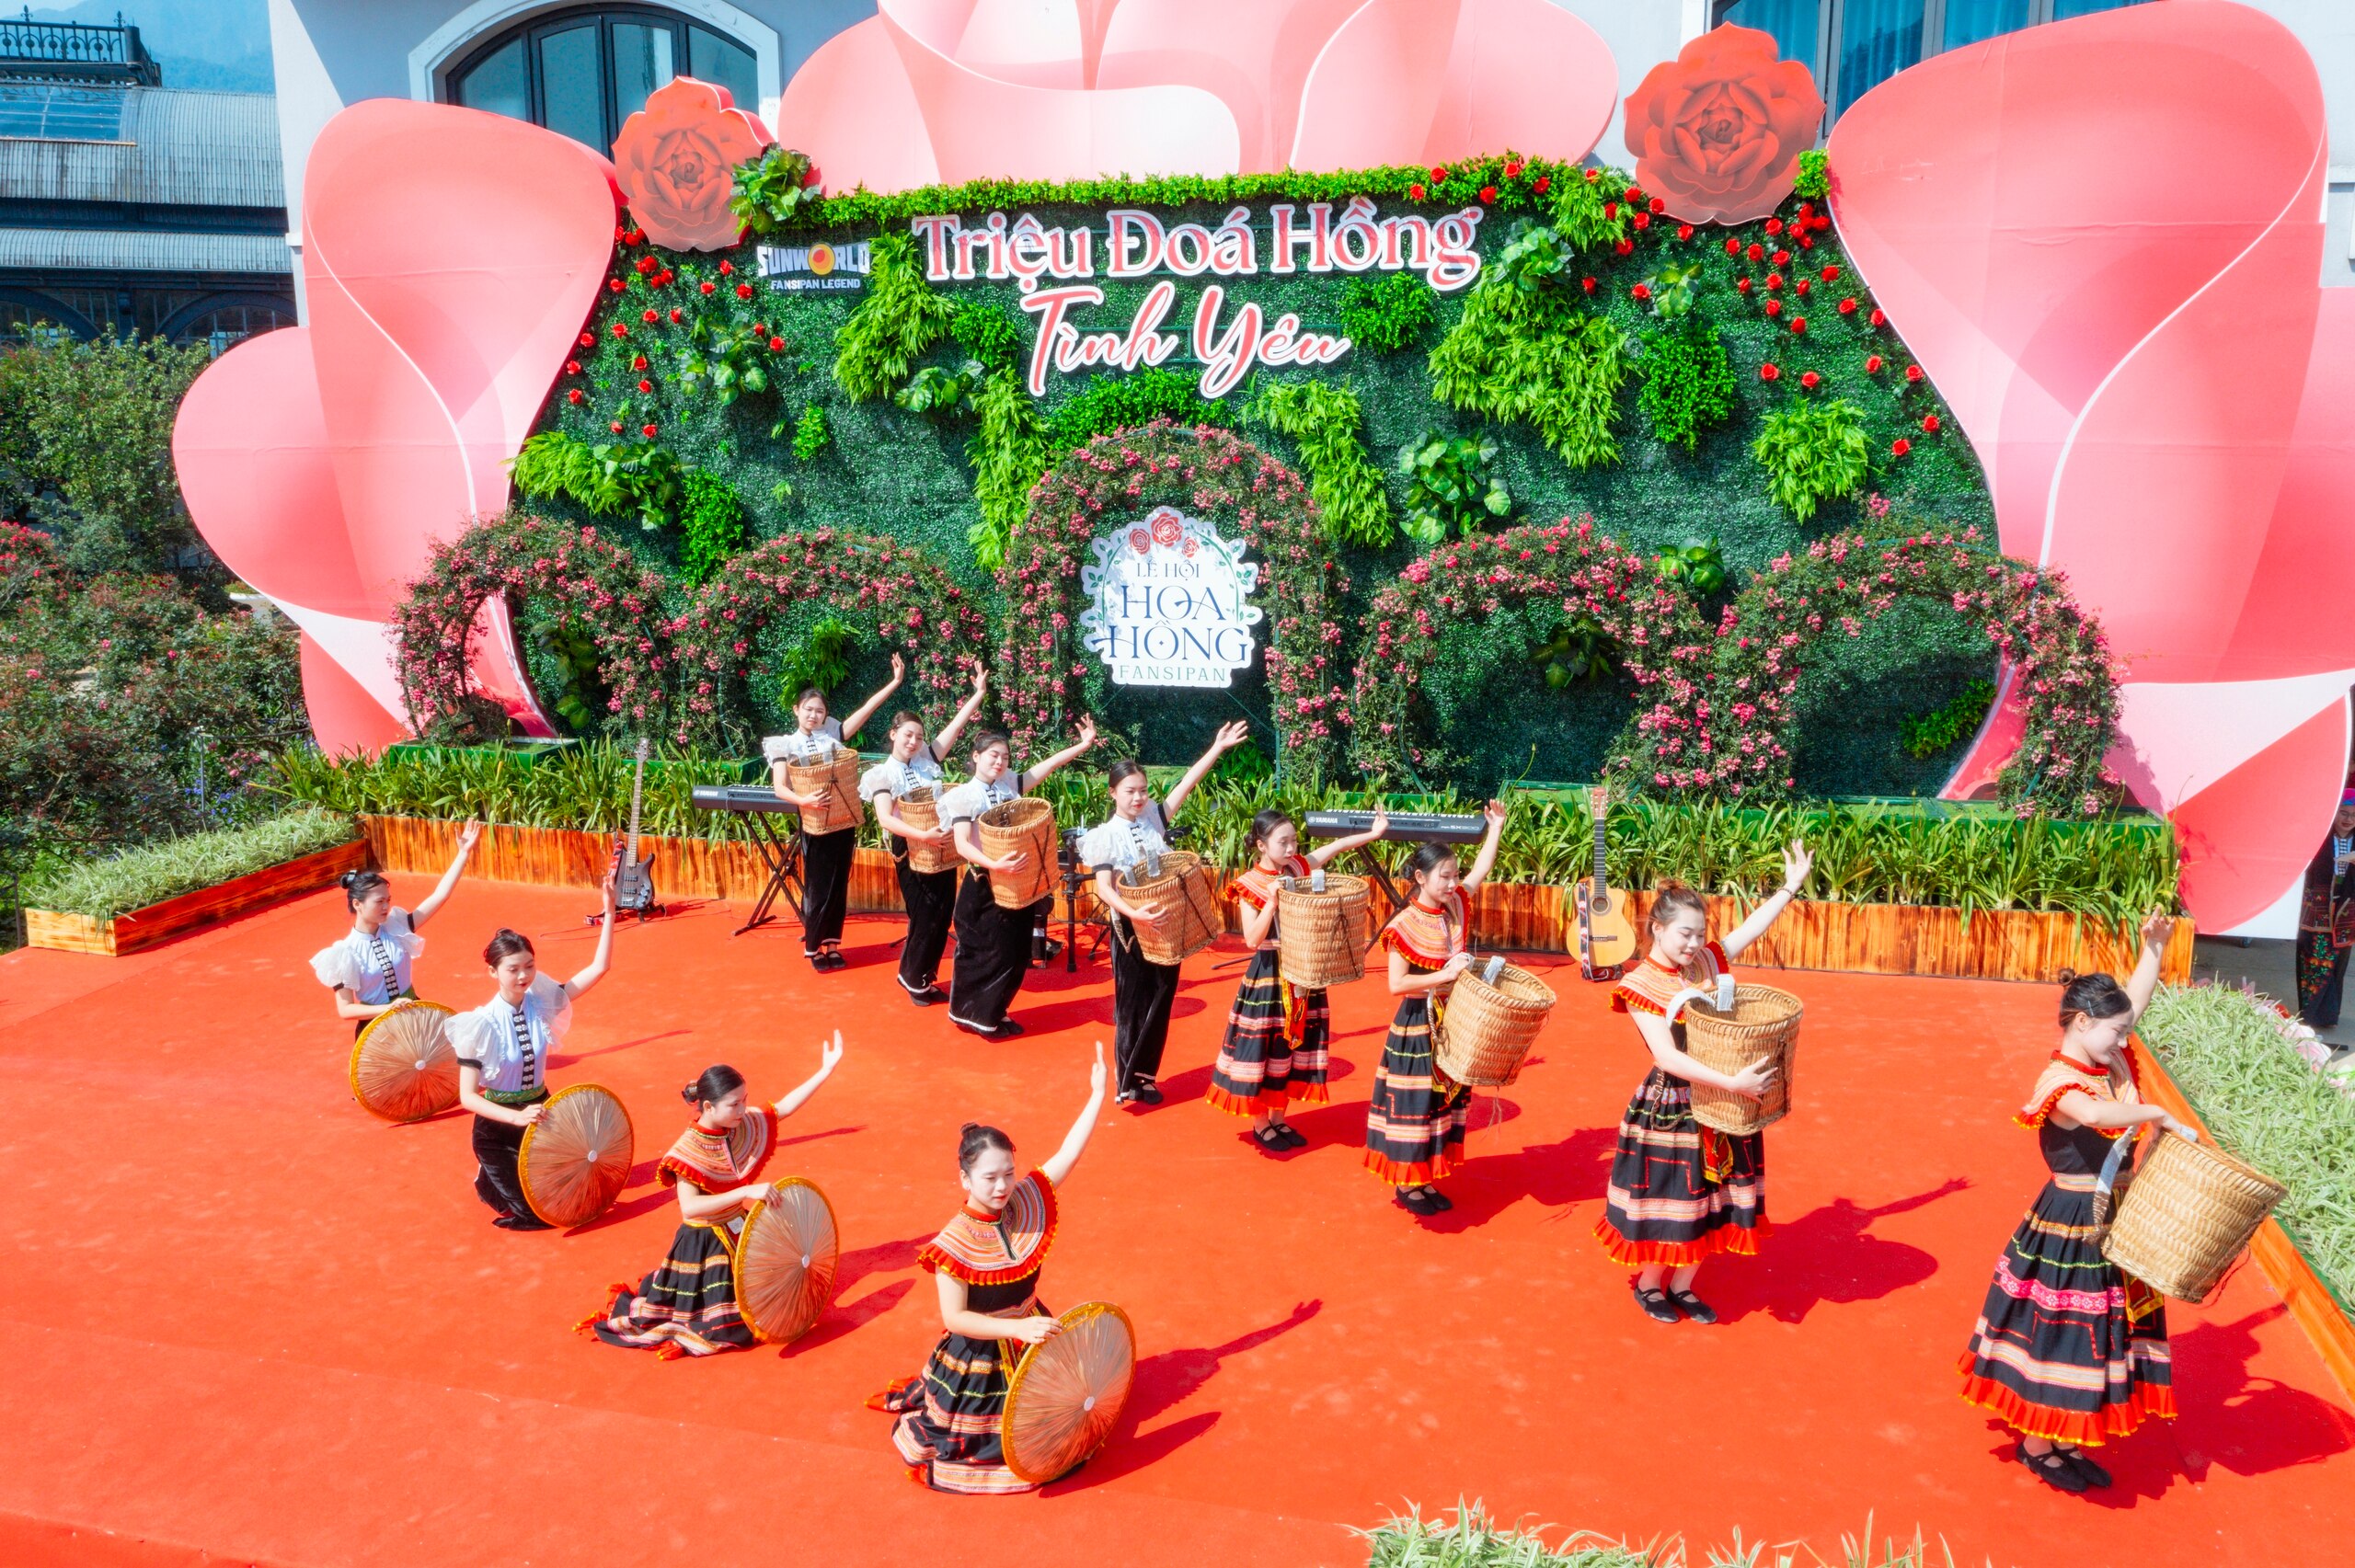 Sáng 27.4, hàng ngàn du khách đã đổ về Sun World Fansipan Legend để tham dự chương trình khai mạc Lễ hội Hoa hồng tại thung lũng hoa hồng lớn nhất Việt Nam trải dài trên diện tích 50.000 m2, thuộc quần thể nhà ga đi cáp treo của khu du lịch